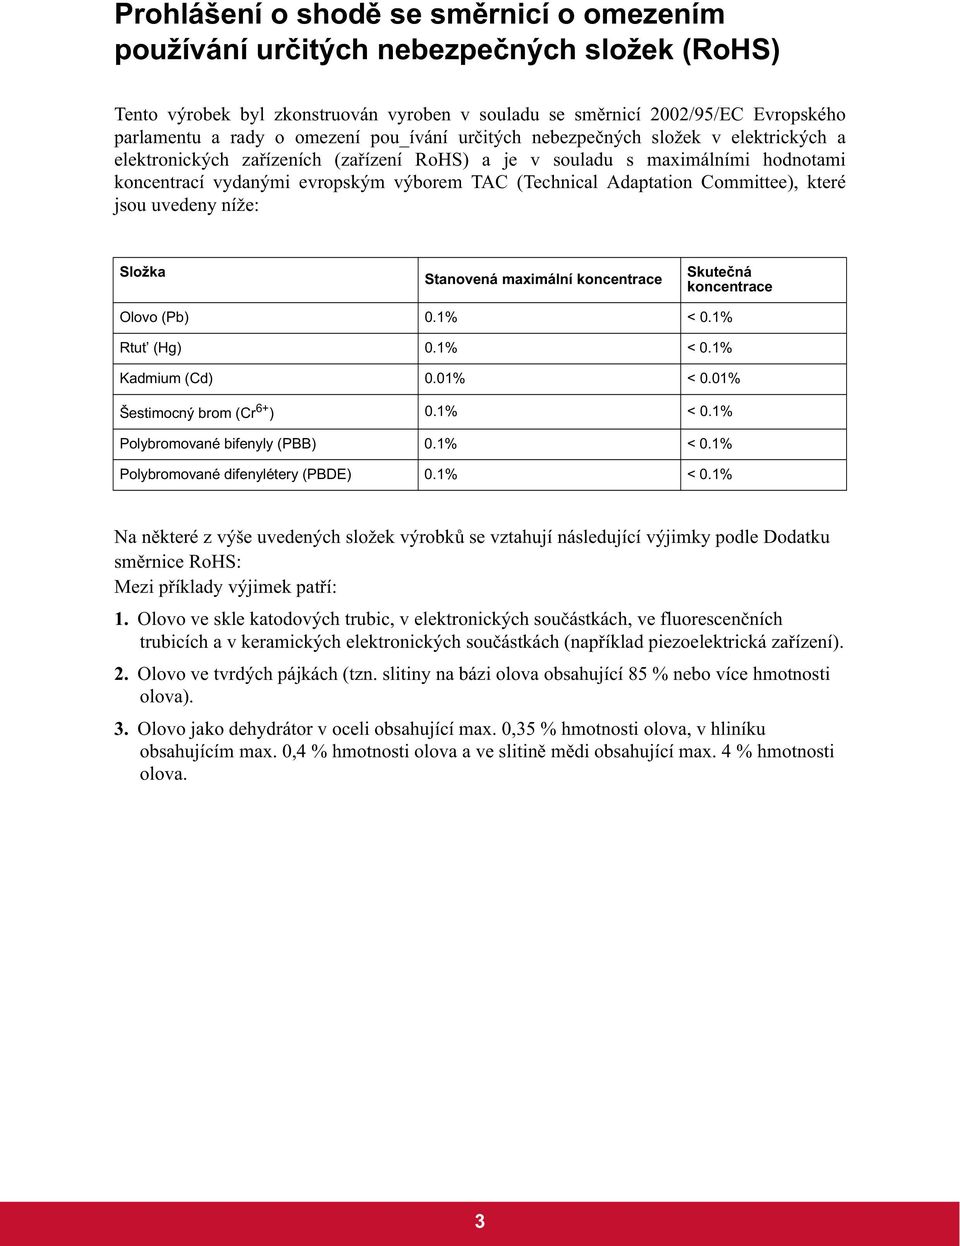 Adaptation Committee), které jsou uvedeny níže: Složka Stanovená maximální koncentrace Skute ná koncentrace Olovo (Pb) 0.1% < 0.1% Rtut (Hg) 0.1% < 0.1% Kadmium (Cd) 0.01% < 0.